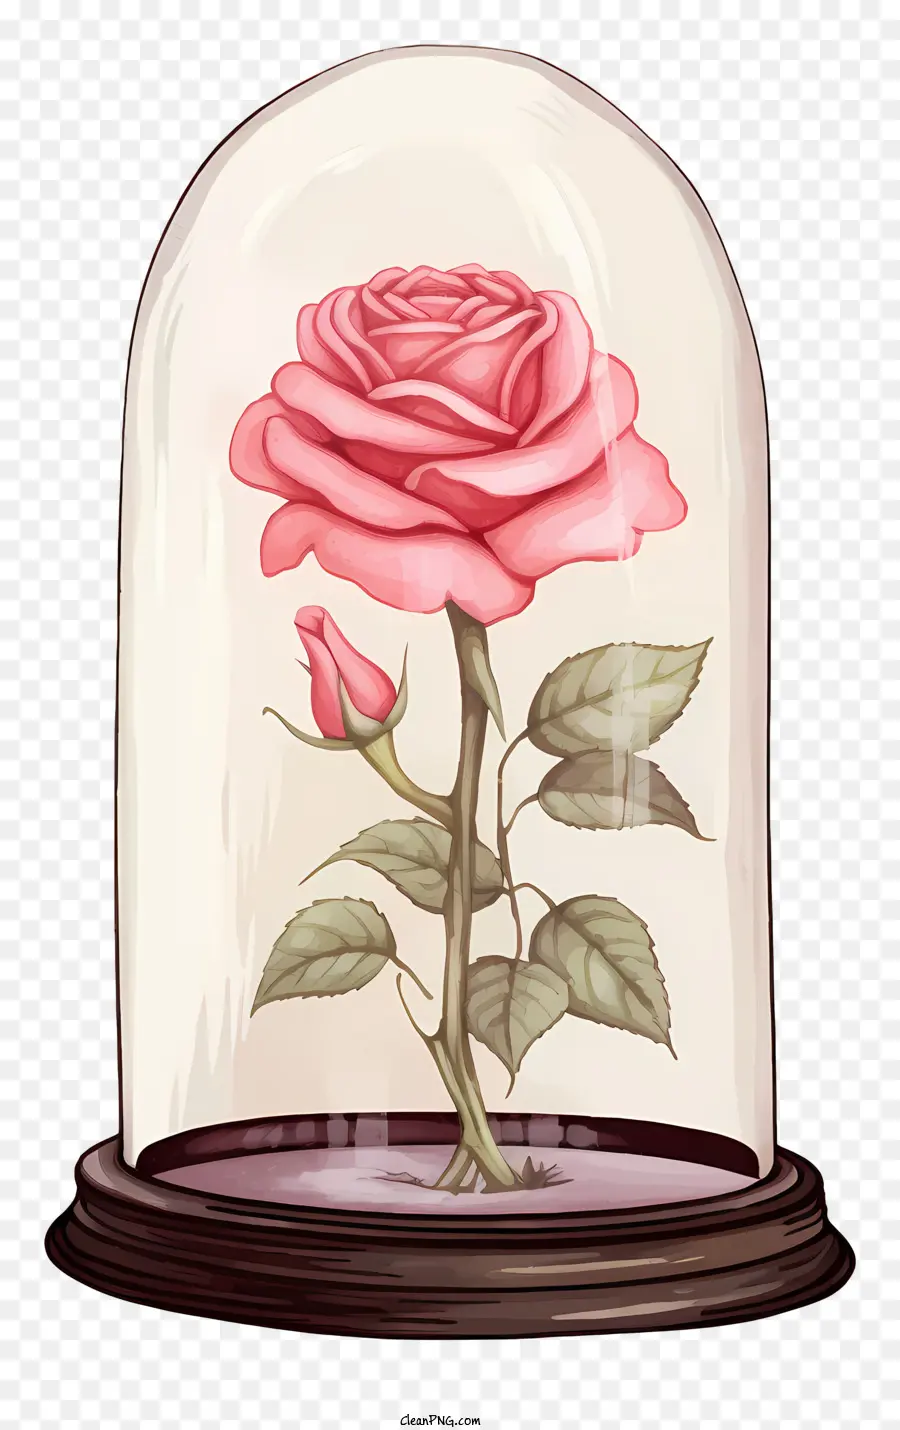 Rose - Rose im Glockenglas auf der schwarzen Oberfläche